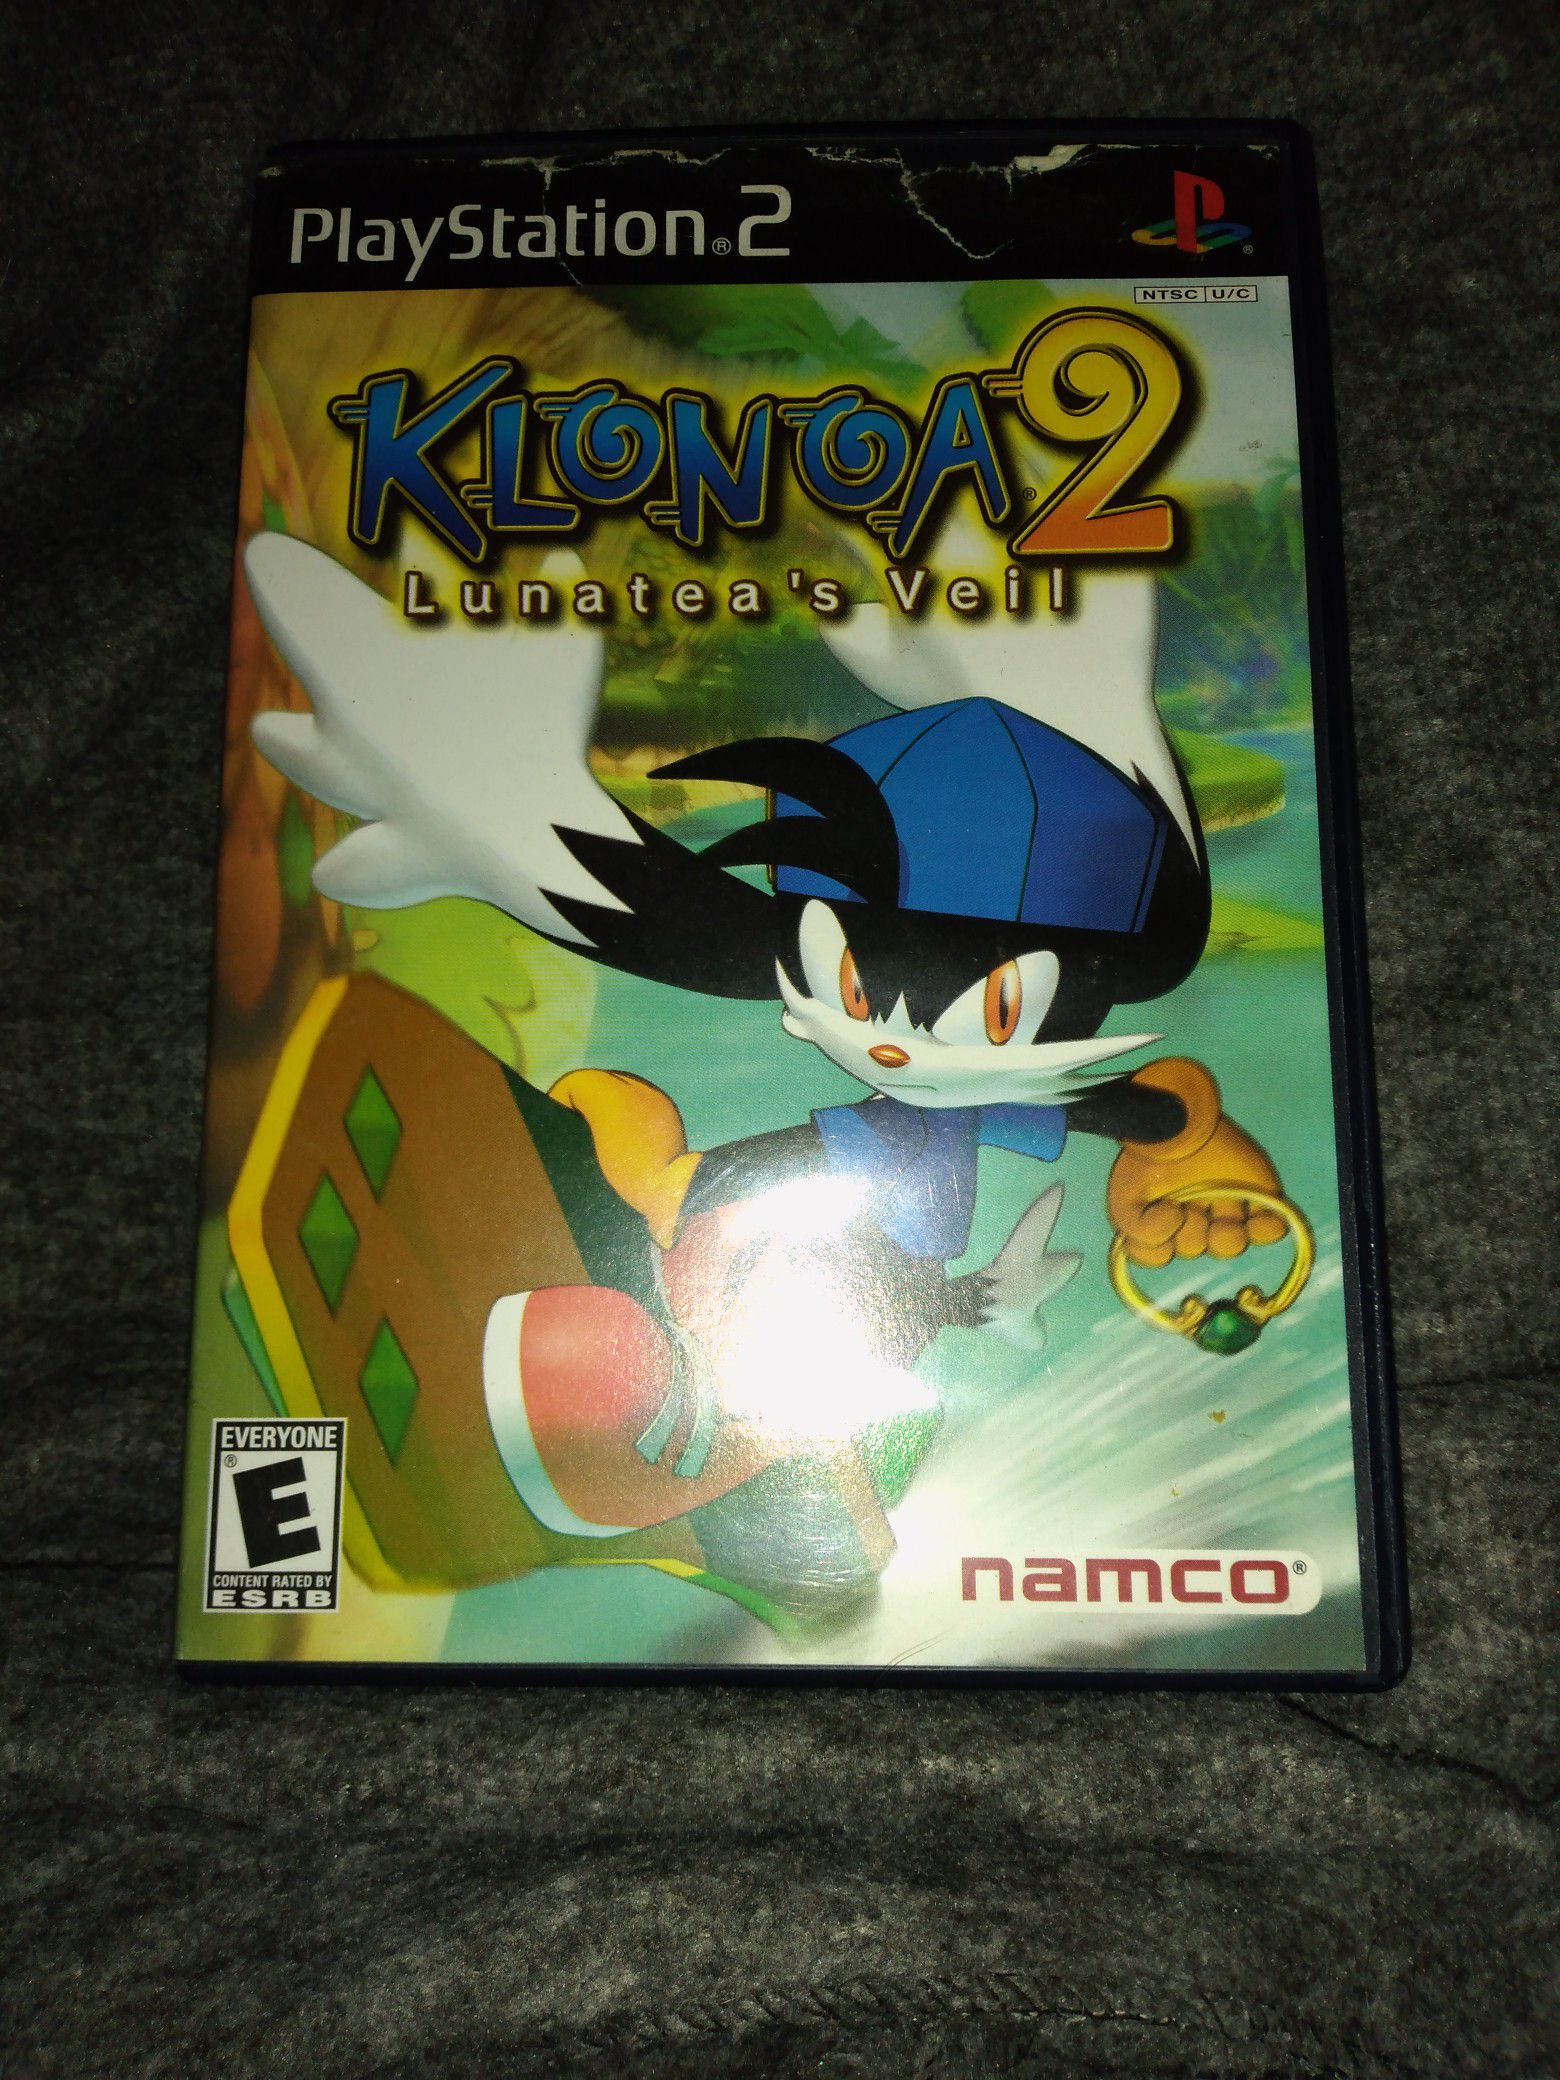 Rare PS2 Klonoa 2 Lunatea's Veil game